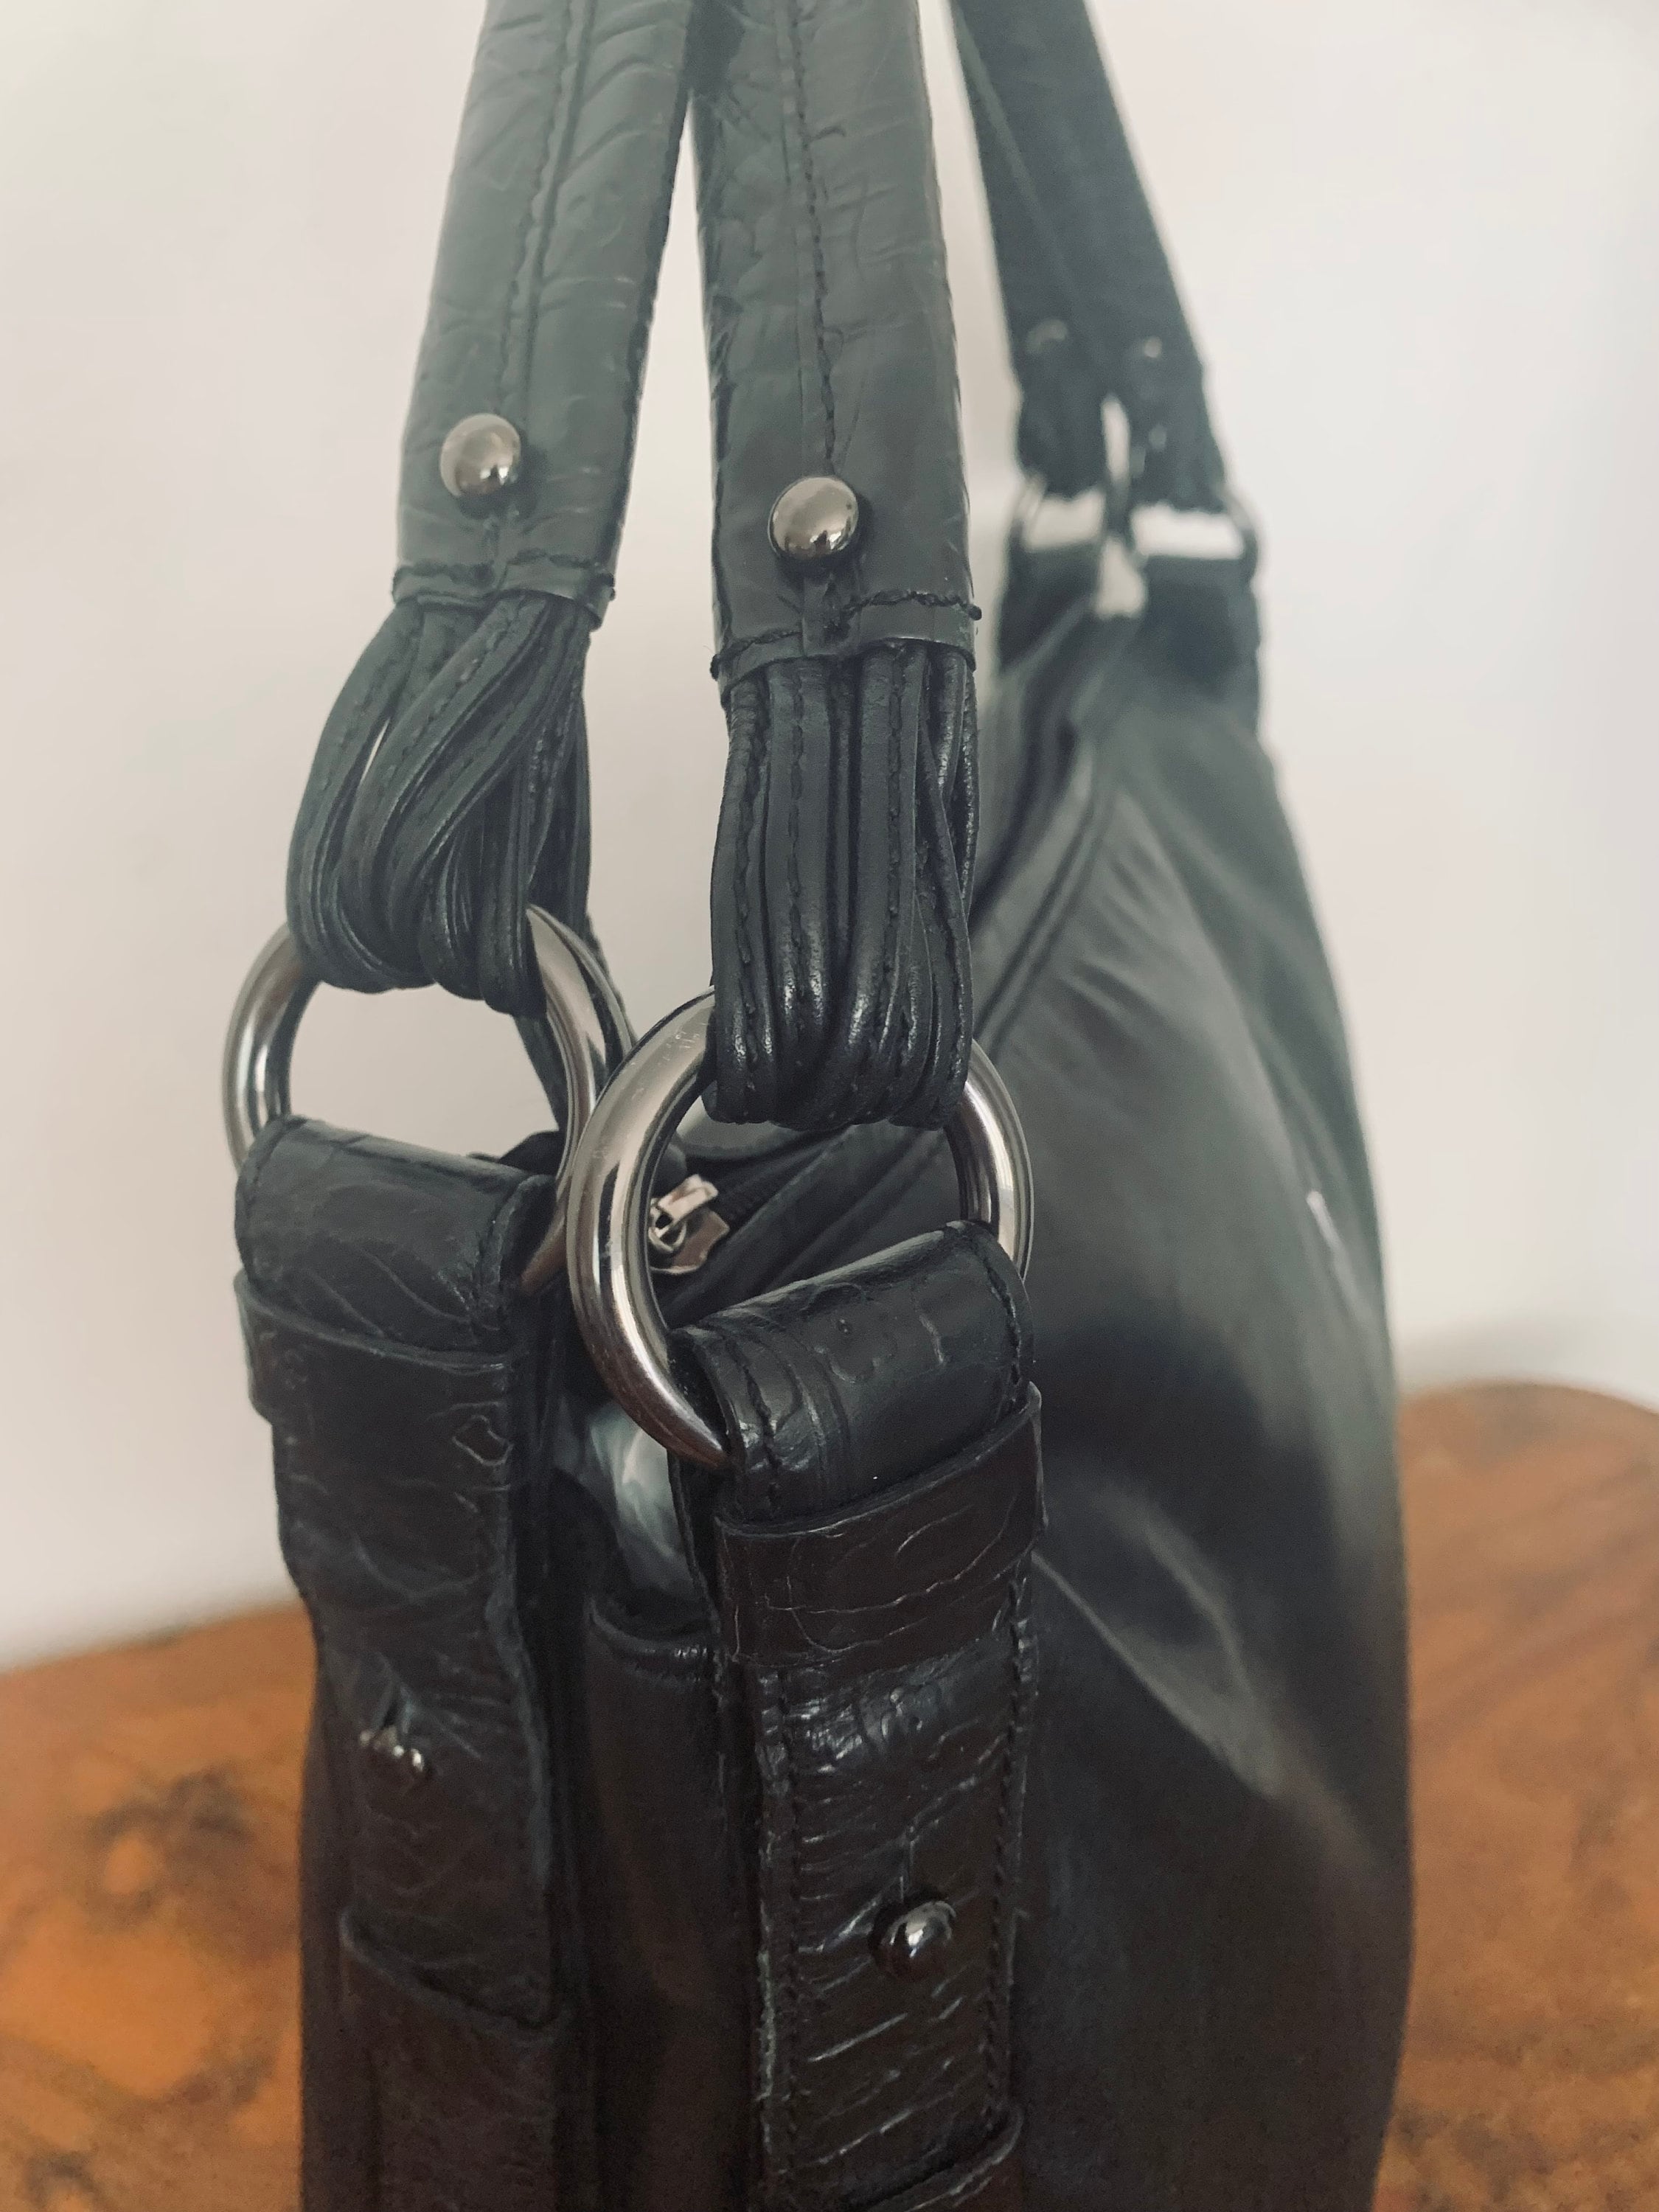 Via Spiga Tote Bag Large Black Leather Handbagtooled Purse - Etsy